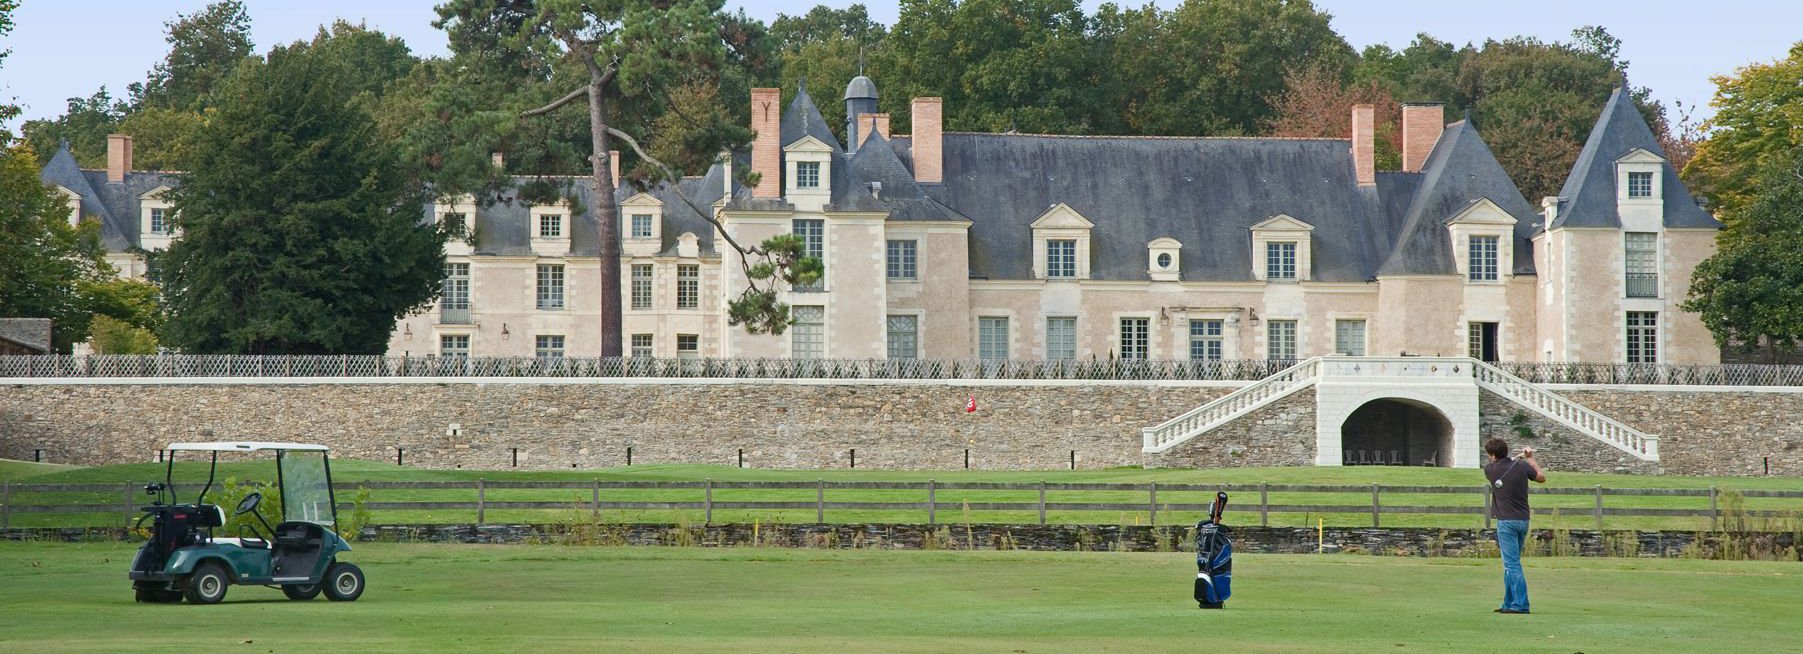 Château de la Perrière | Château avec terrain de golf près d’Angers